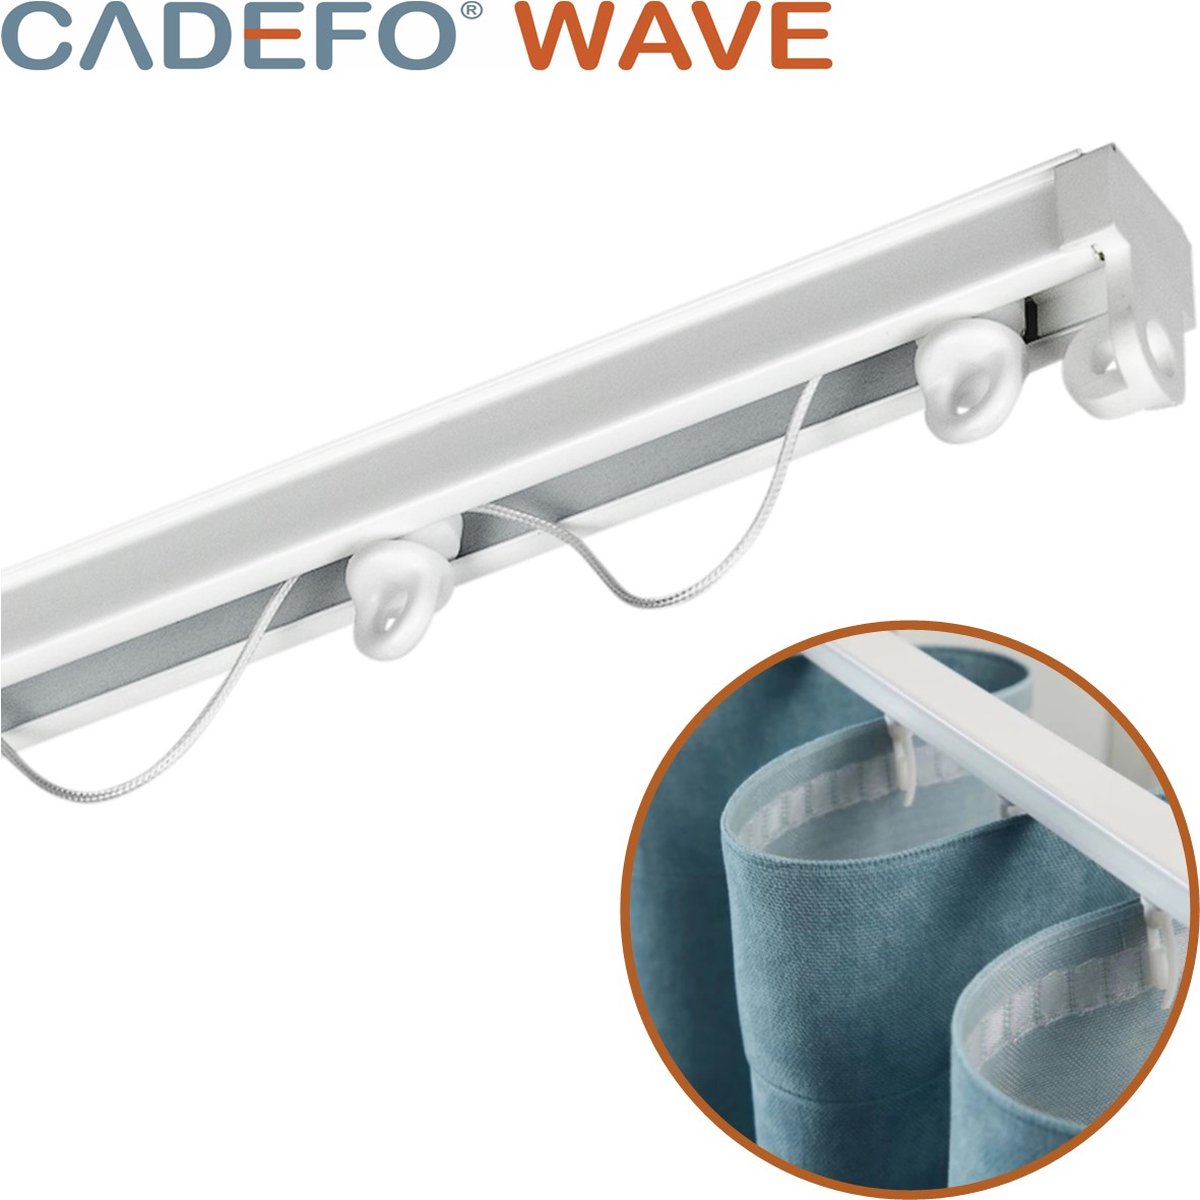 CADEFO WAVE (351 - 400 cm) Gordijnrails - Compleet op maat! - UIT 1 STUK - Leverbaar tot 6 meter - Plafondbevestiging - Lengte 364 cm